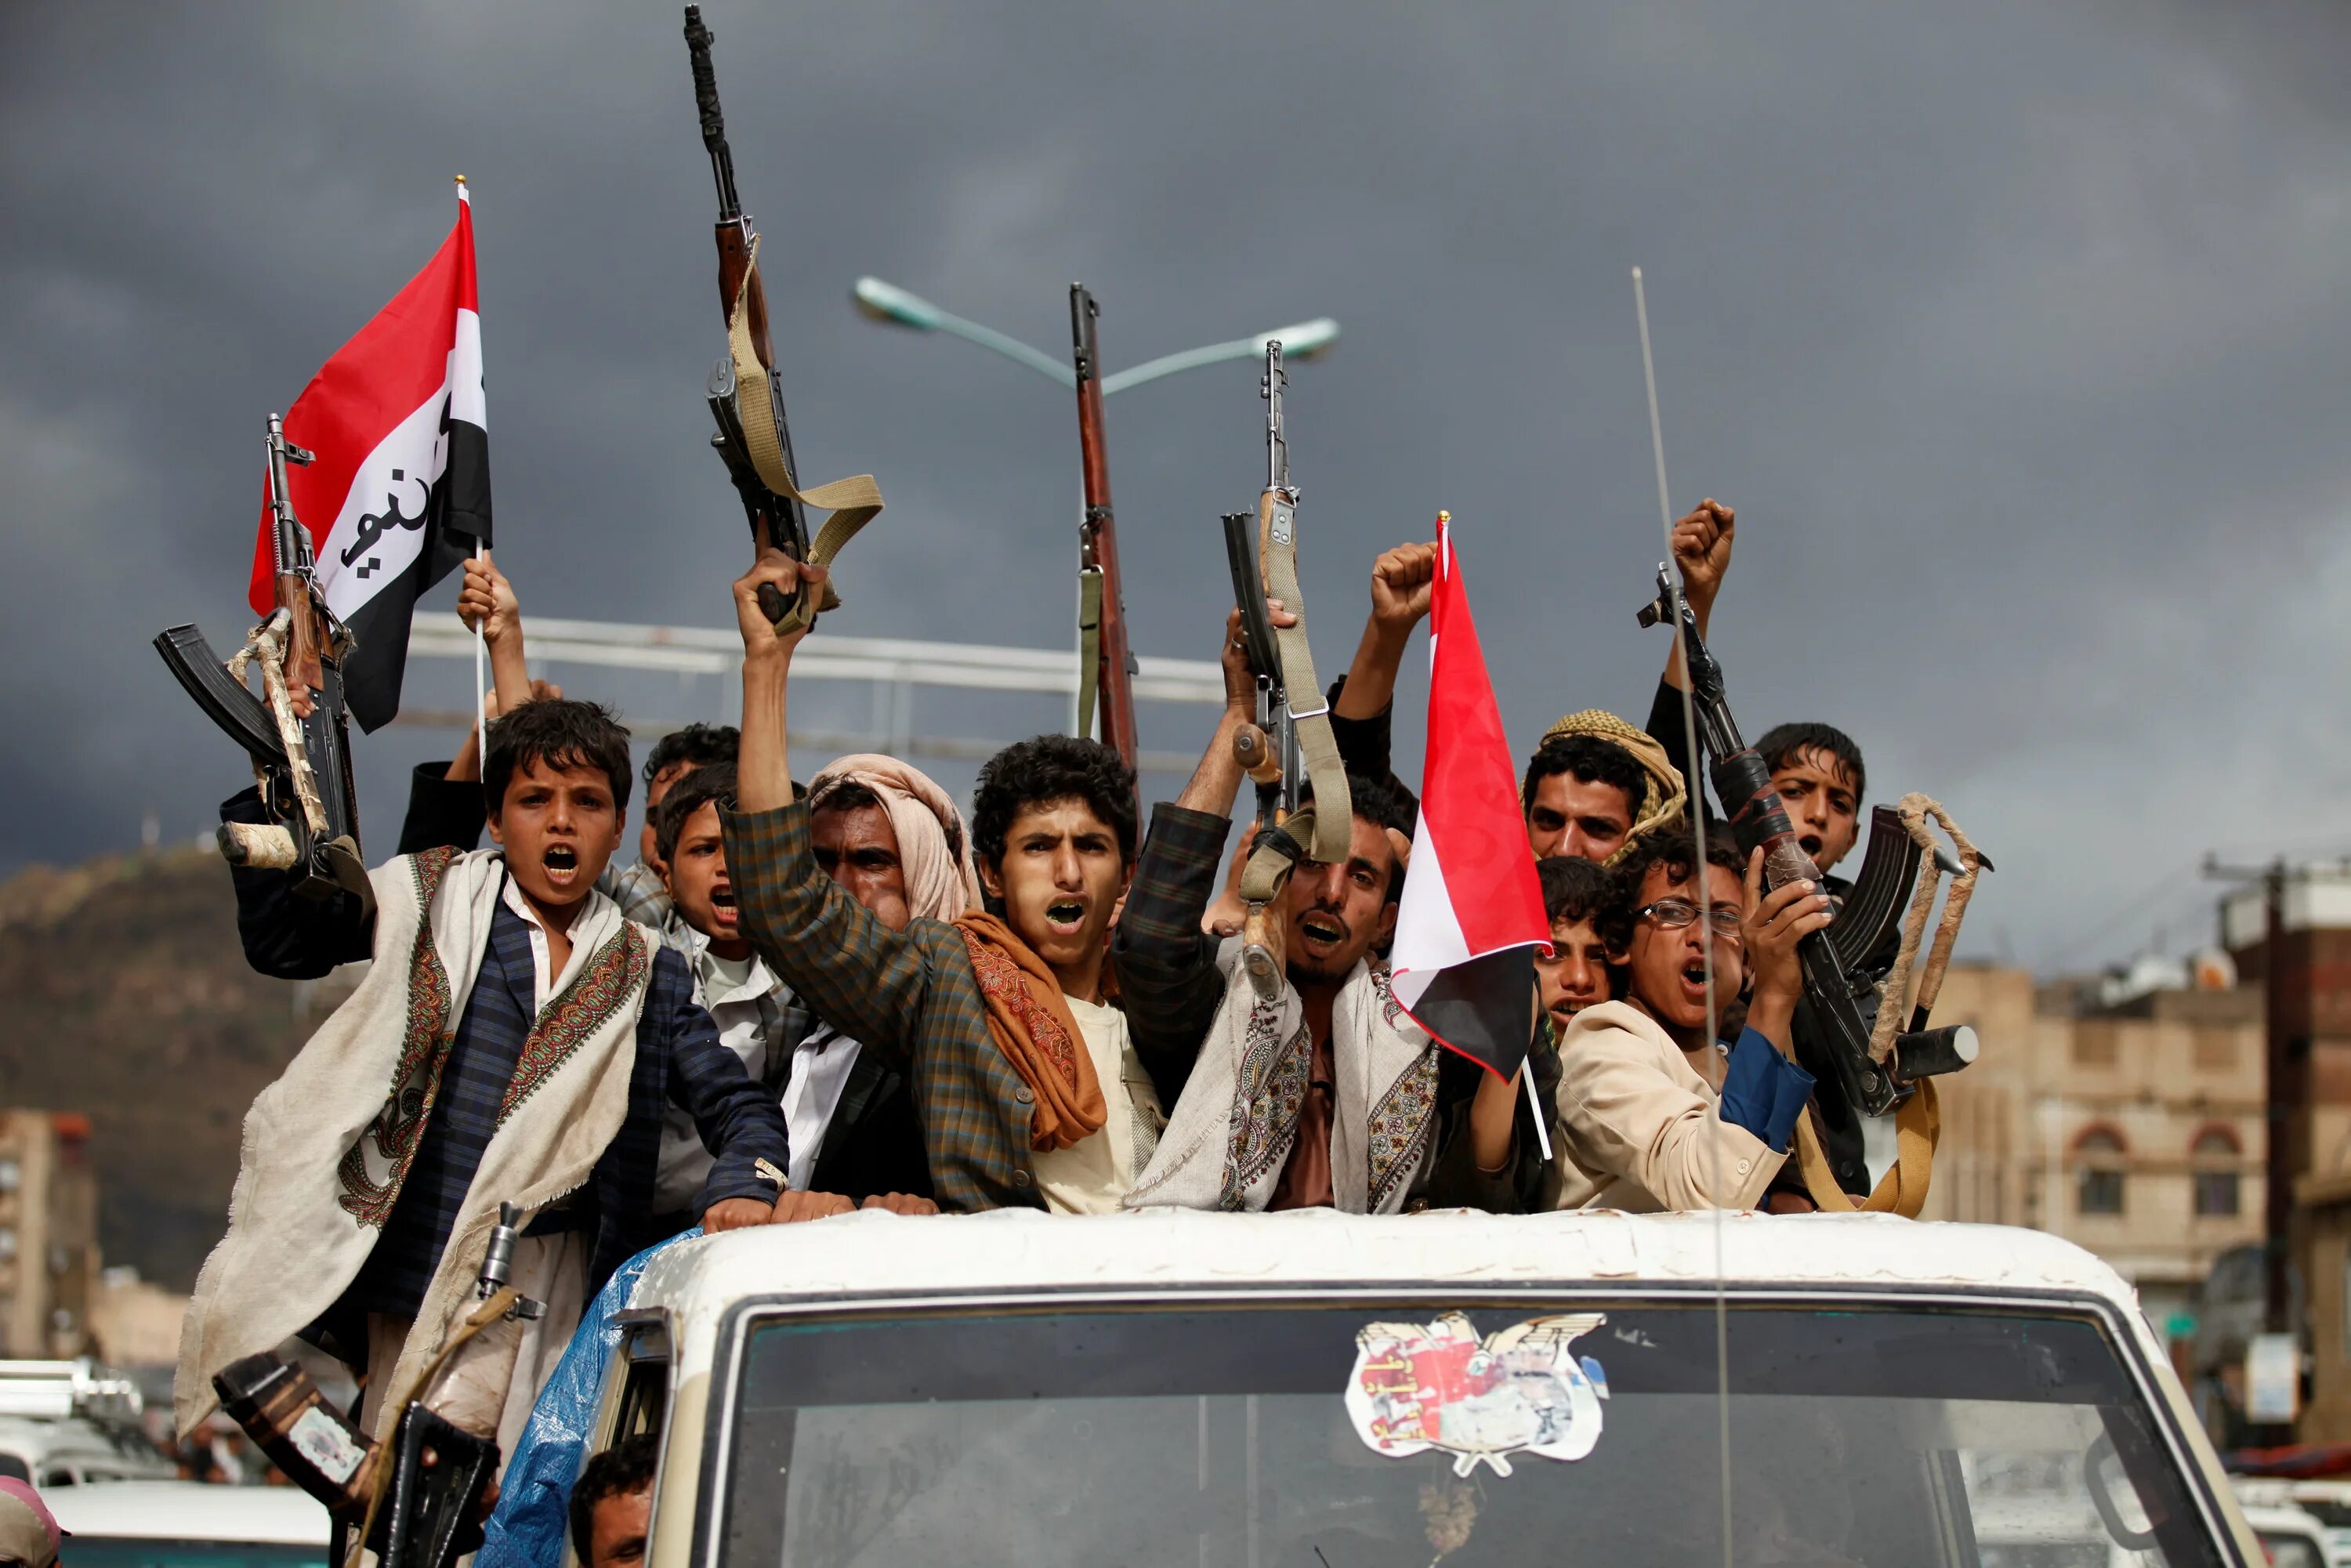 Йемен хуситы. Флаг хуситов в Йемене. Кто такие хуситы и где живут